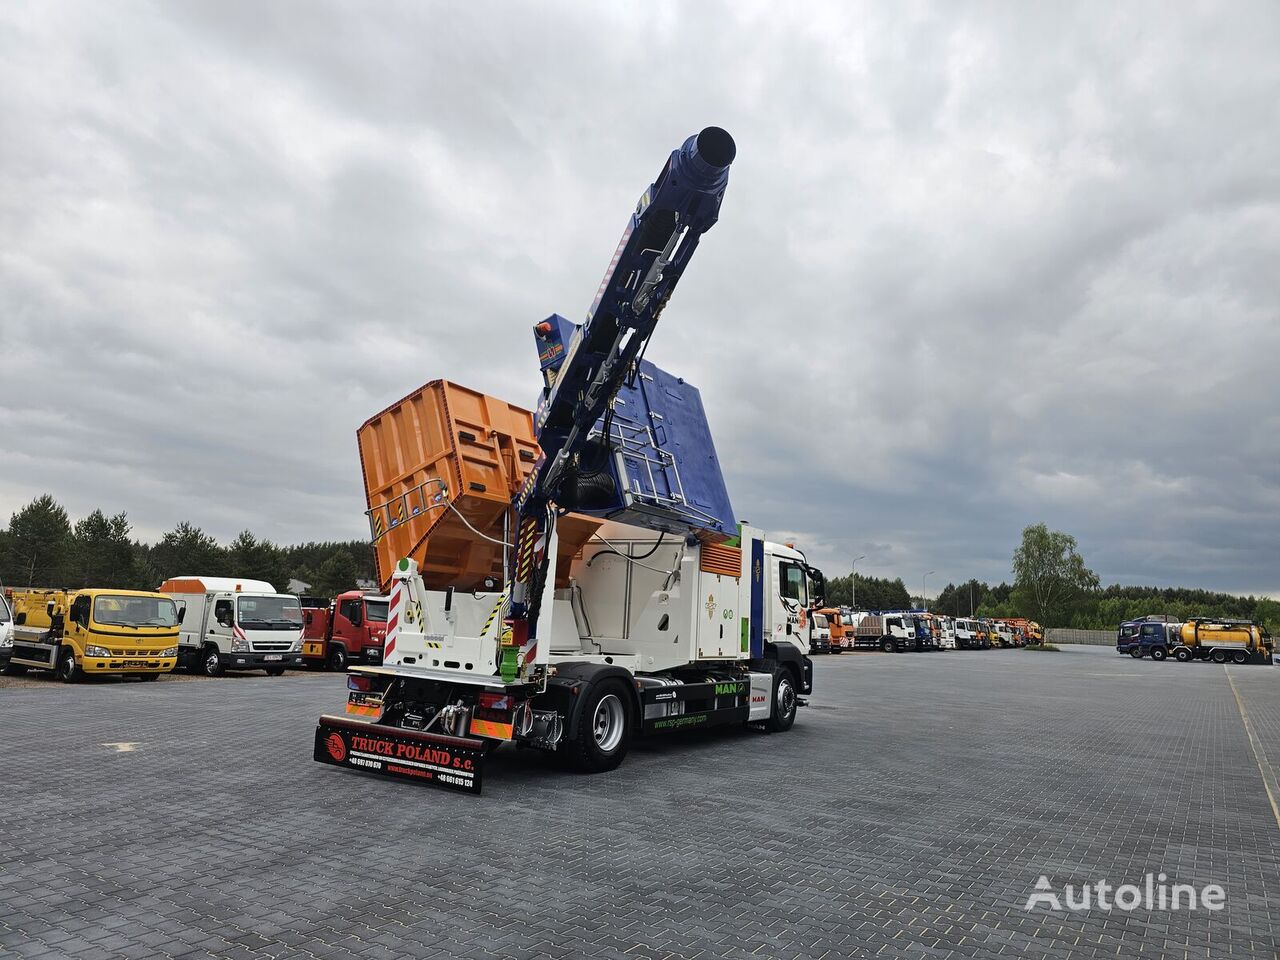 MAN RSP ESE 18/4-KM Saugbagger vacuum cleaner excavator suctionin camión de desatascos